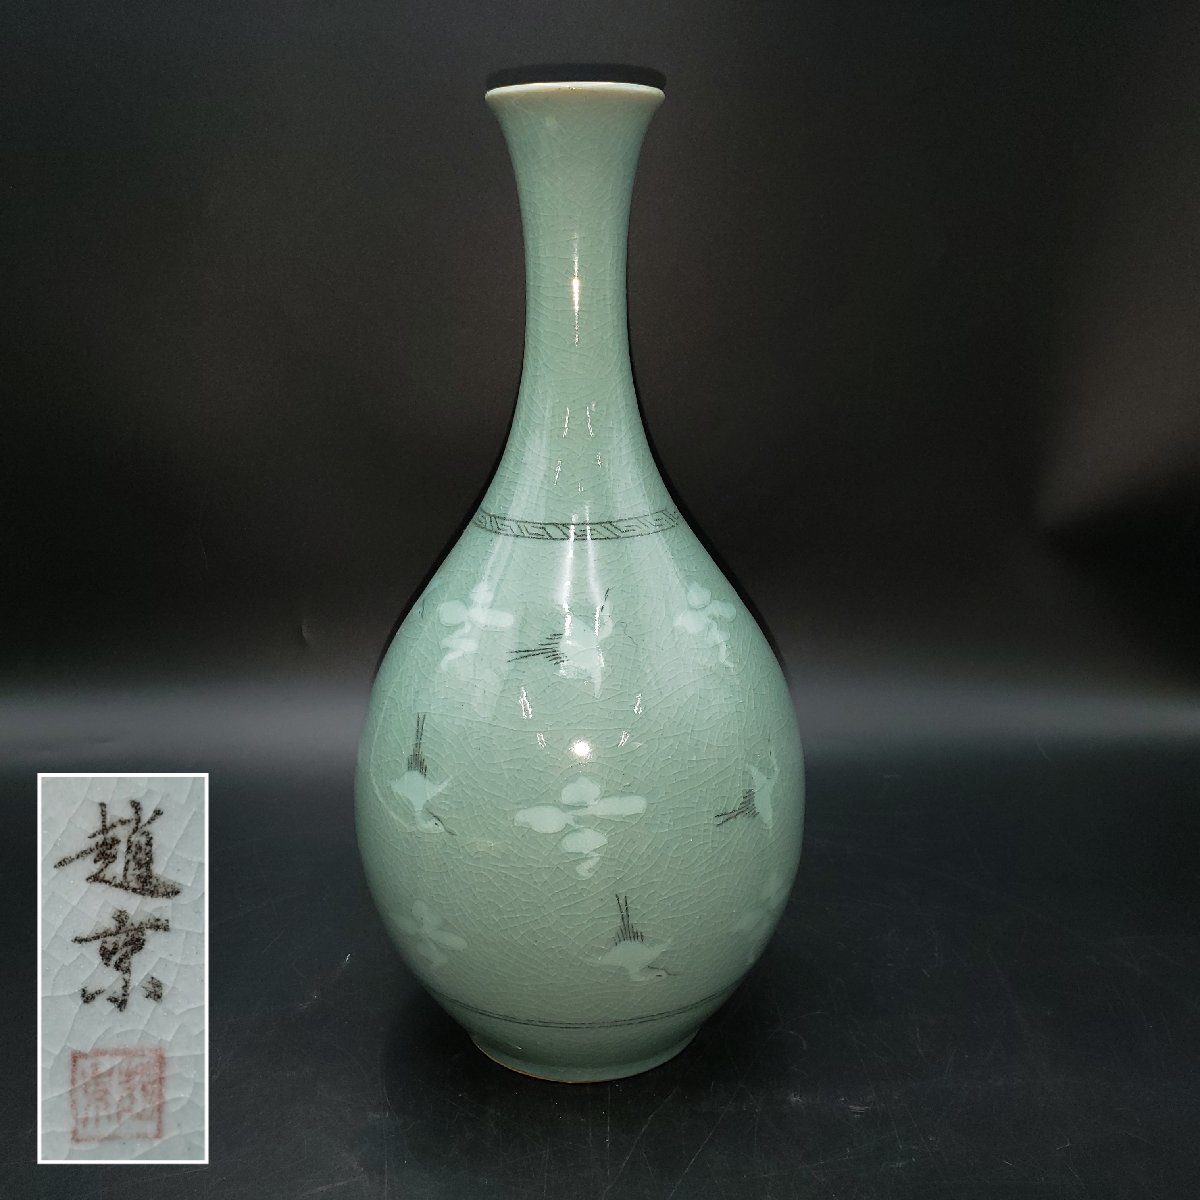 カラフルセット 3個 花瓶 「趙京」高麗青磁 芸林 - 通販 - ssciindia.com